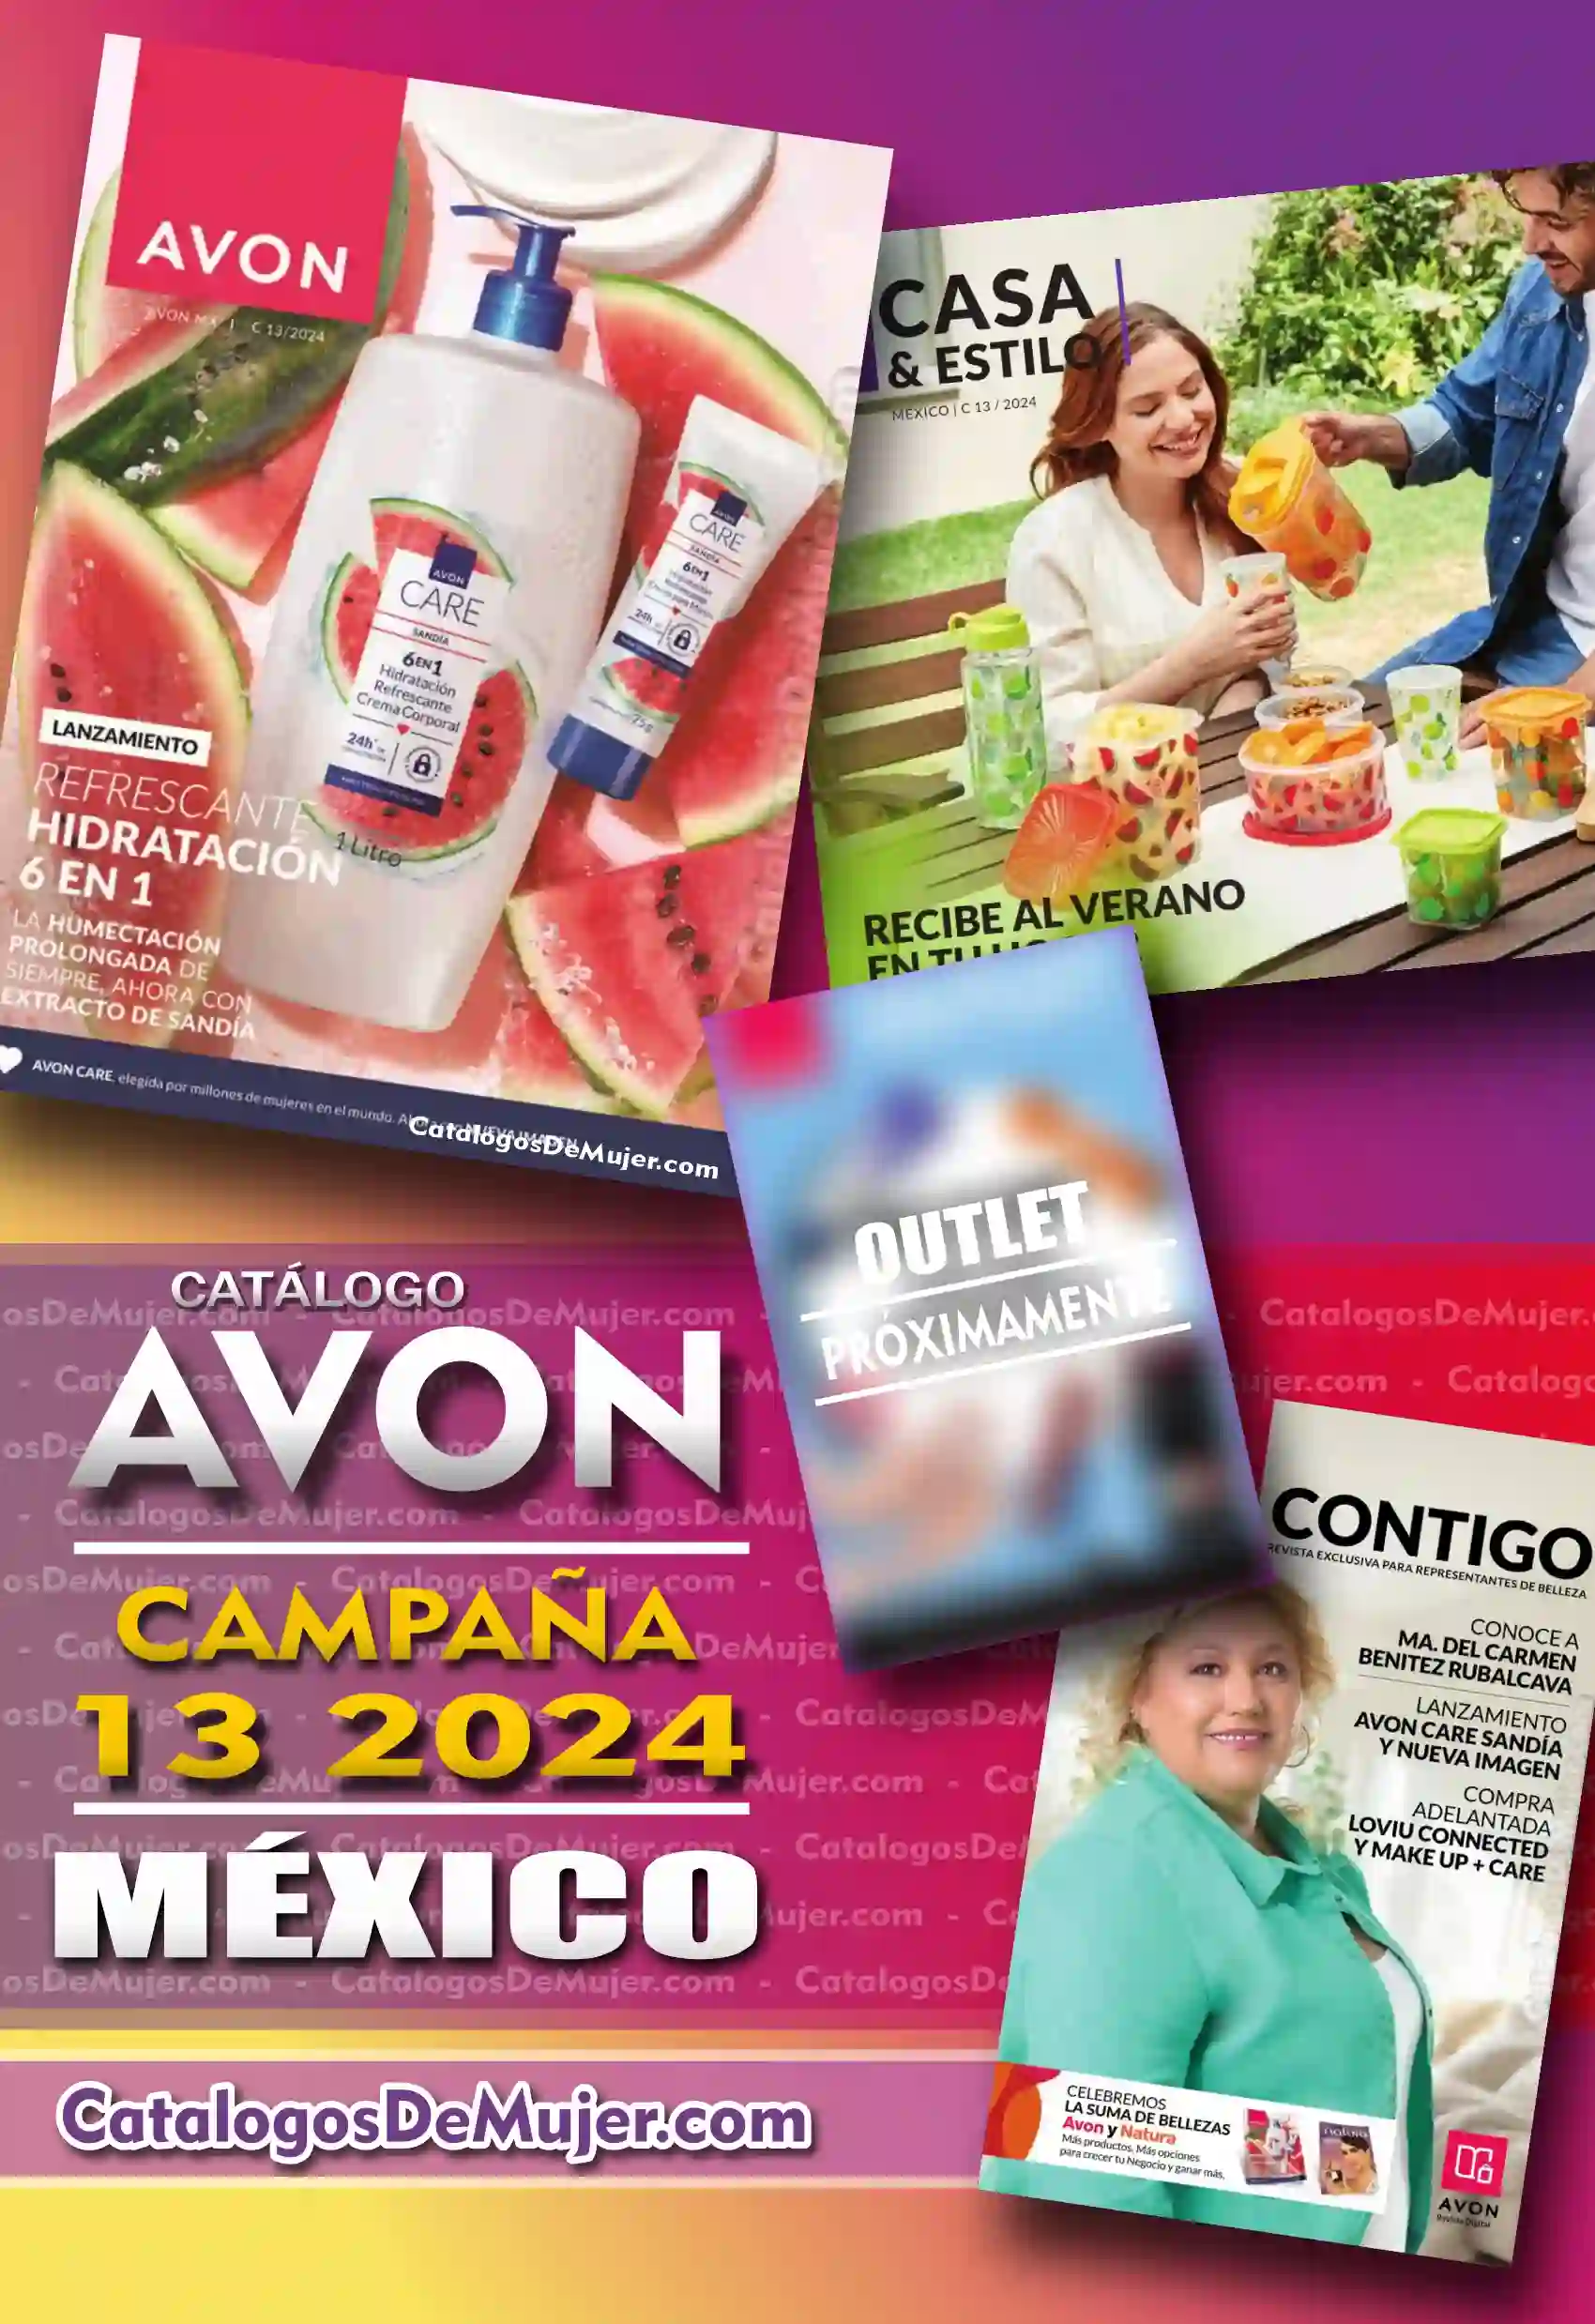 Catalogo Avon Campaña 13 México 2024